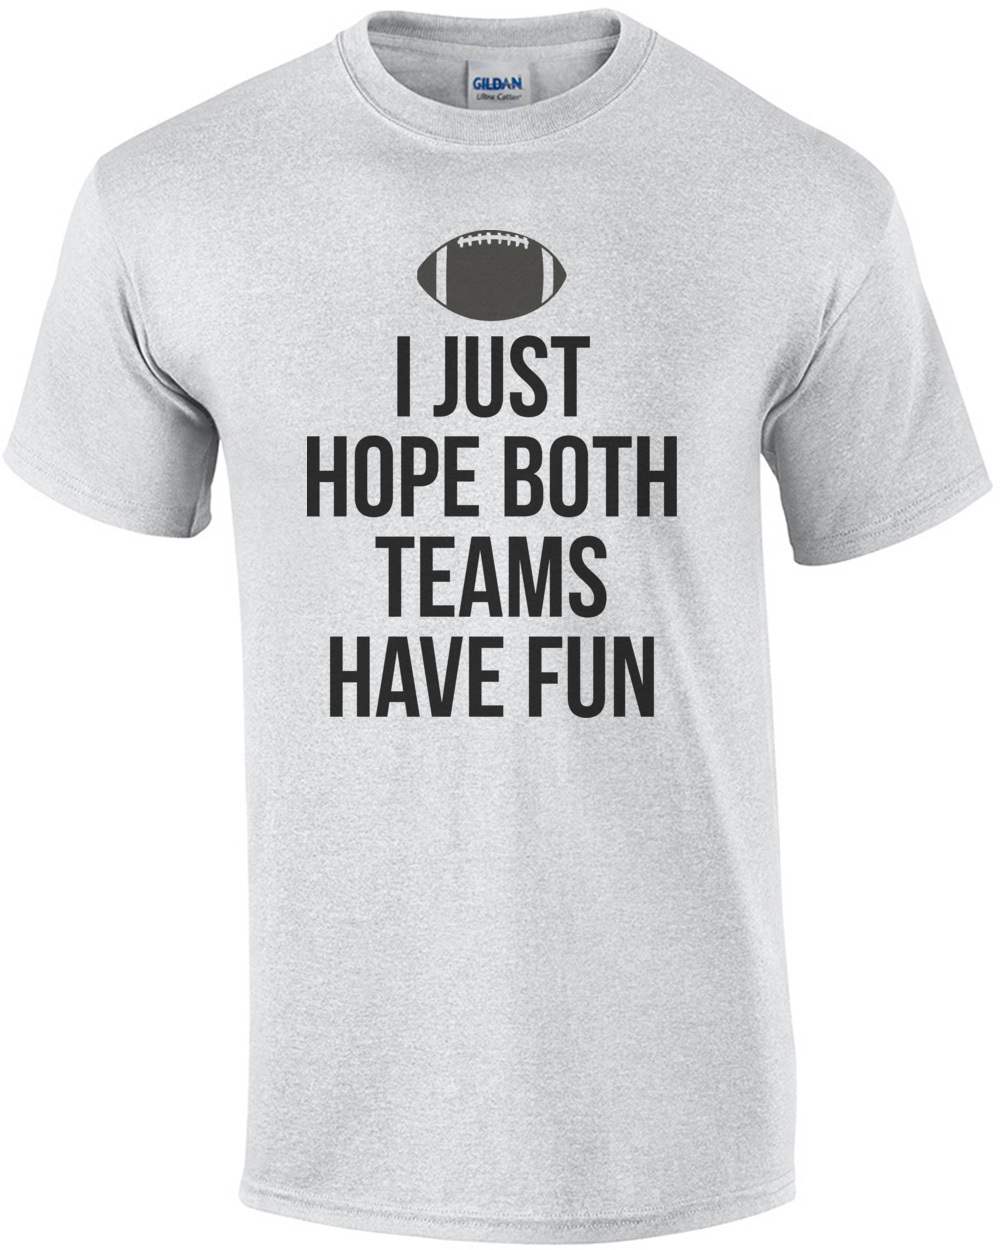 I Just Hope Both Teams Have Fun Shirt Funny Football Shirts 